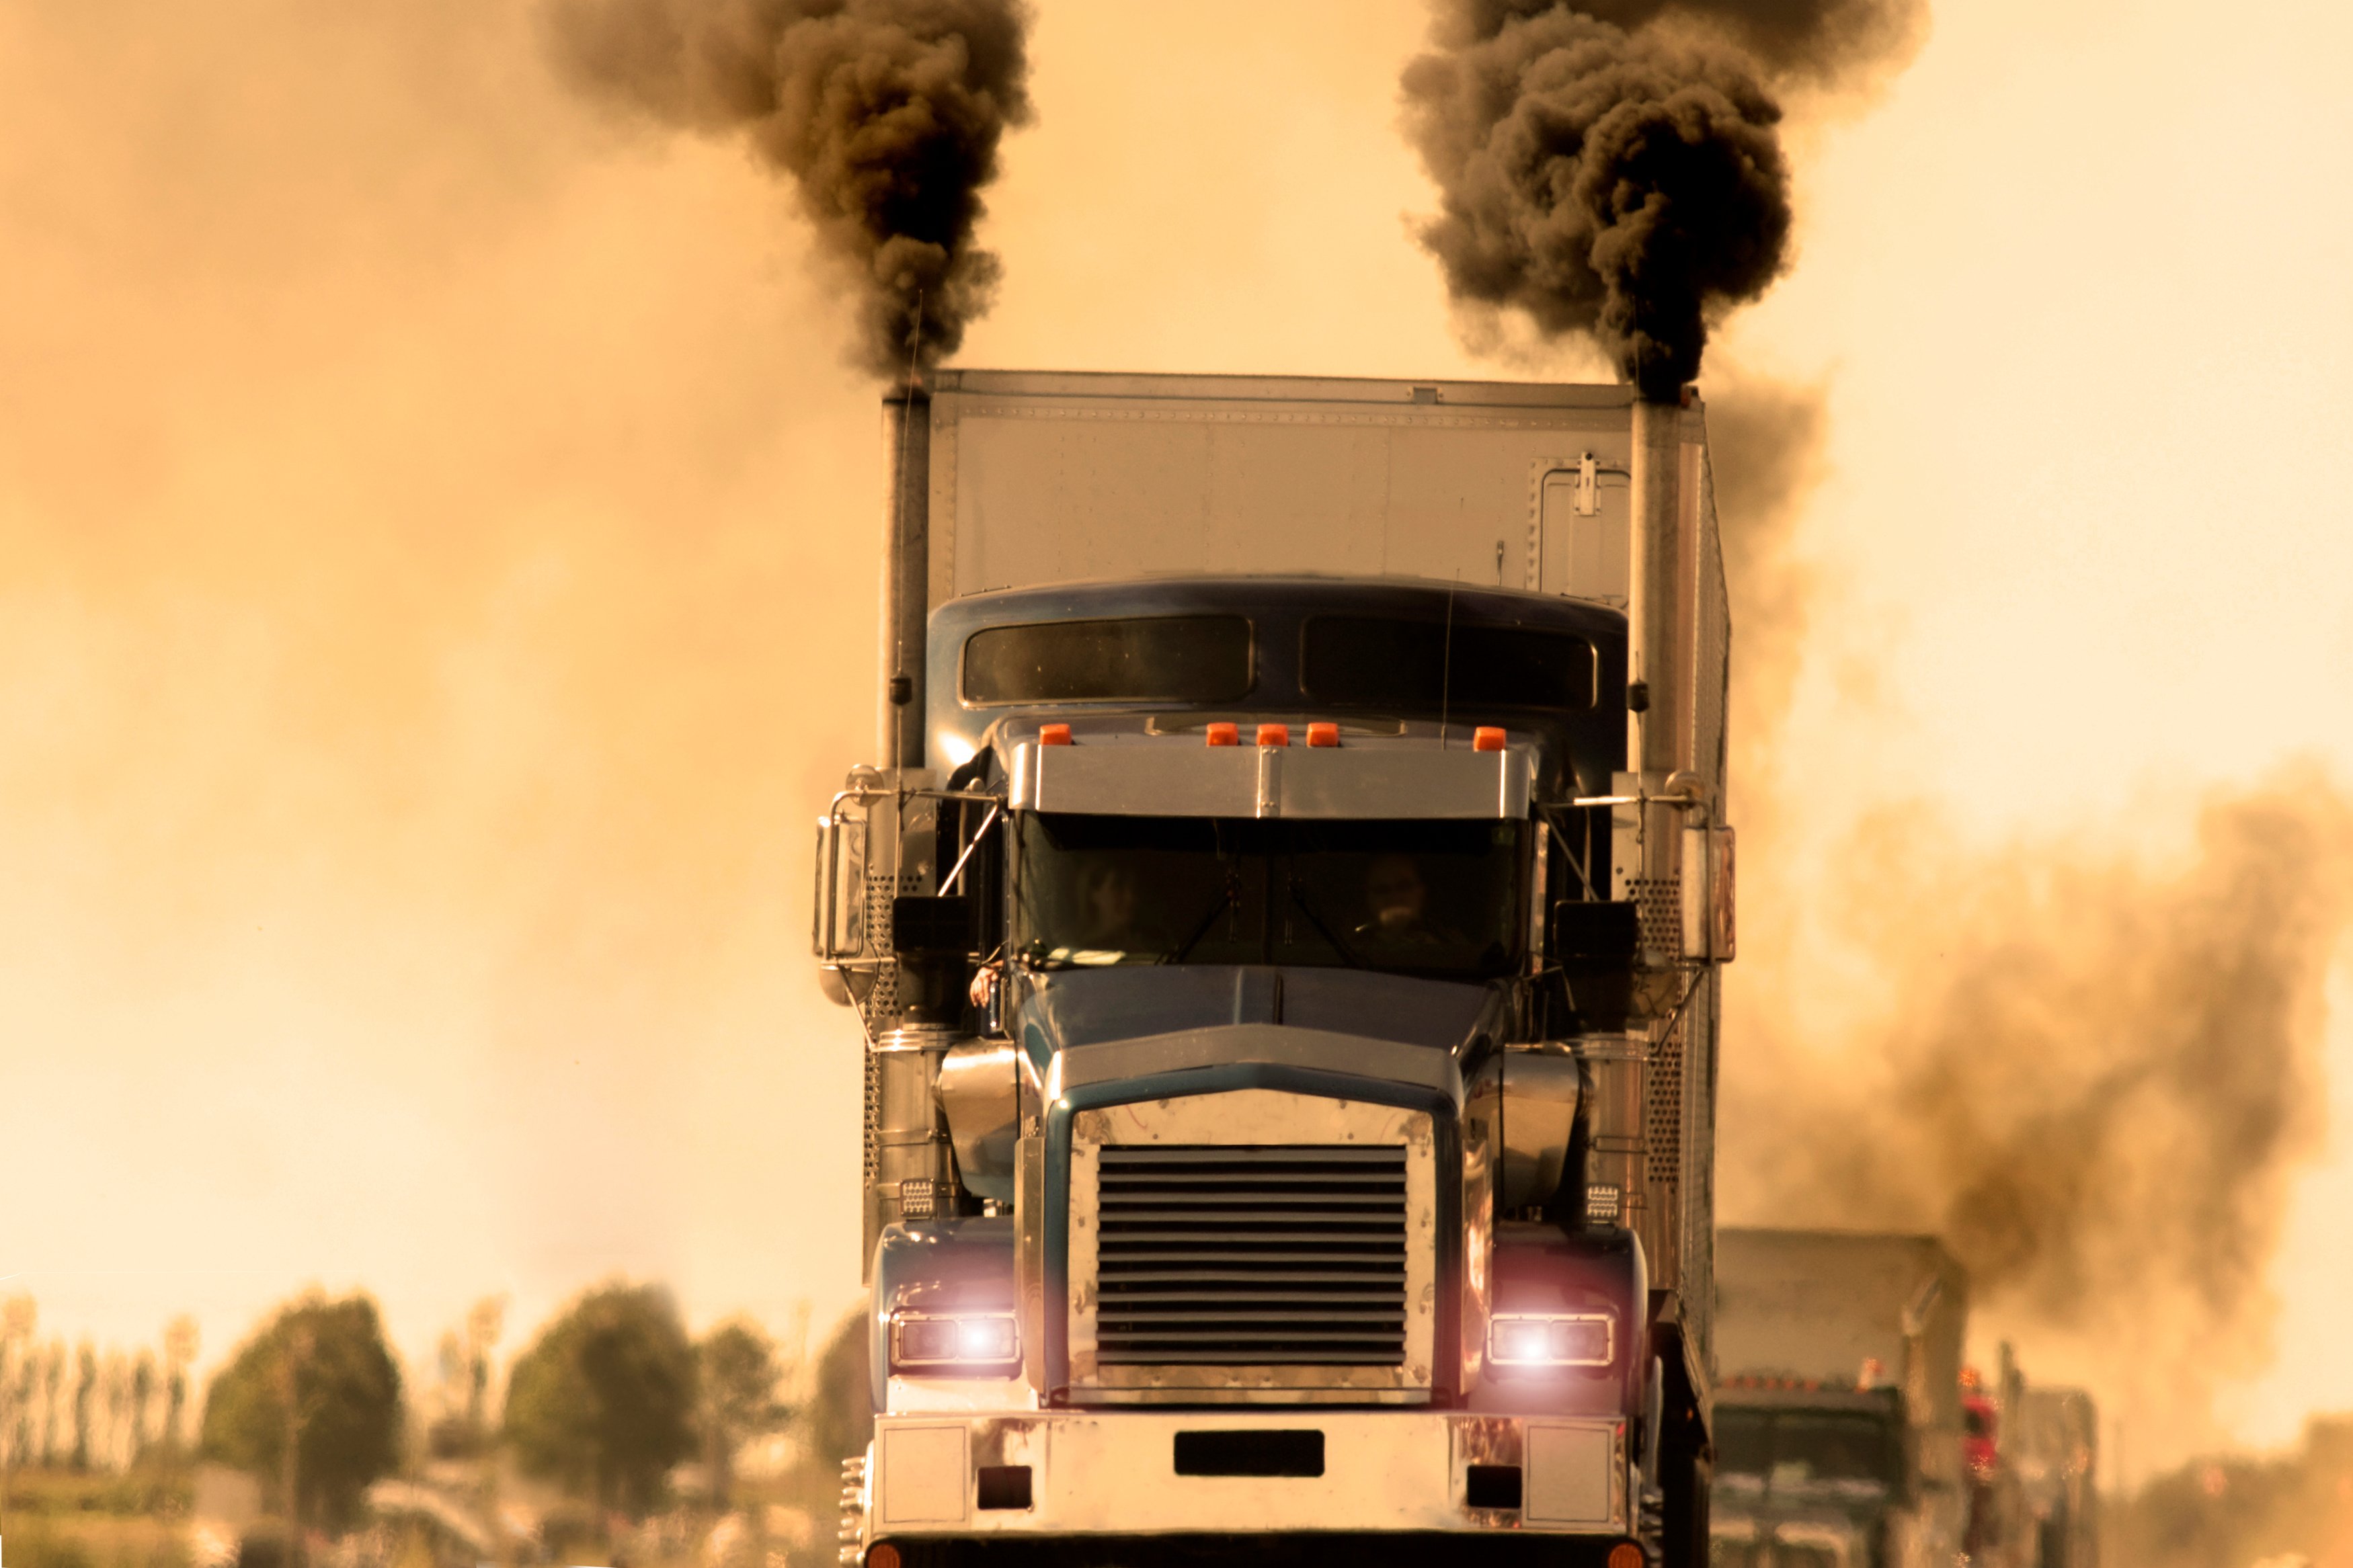 A line of diesel trucks creating dark smoke